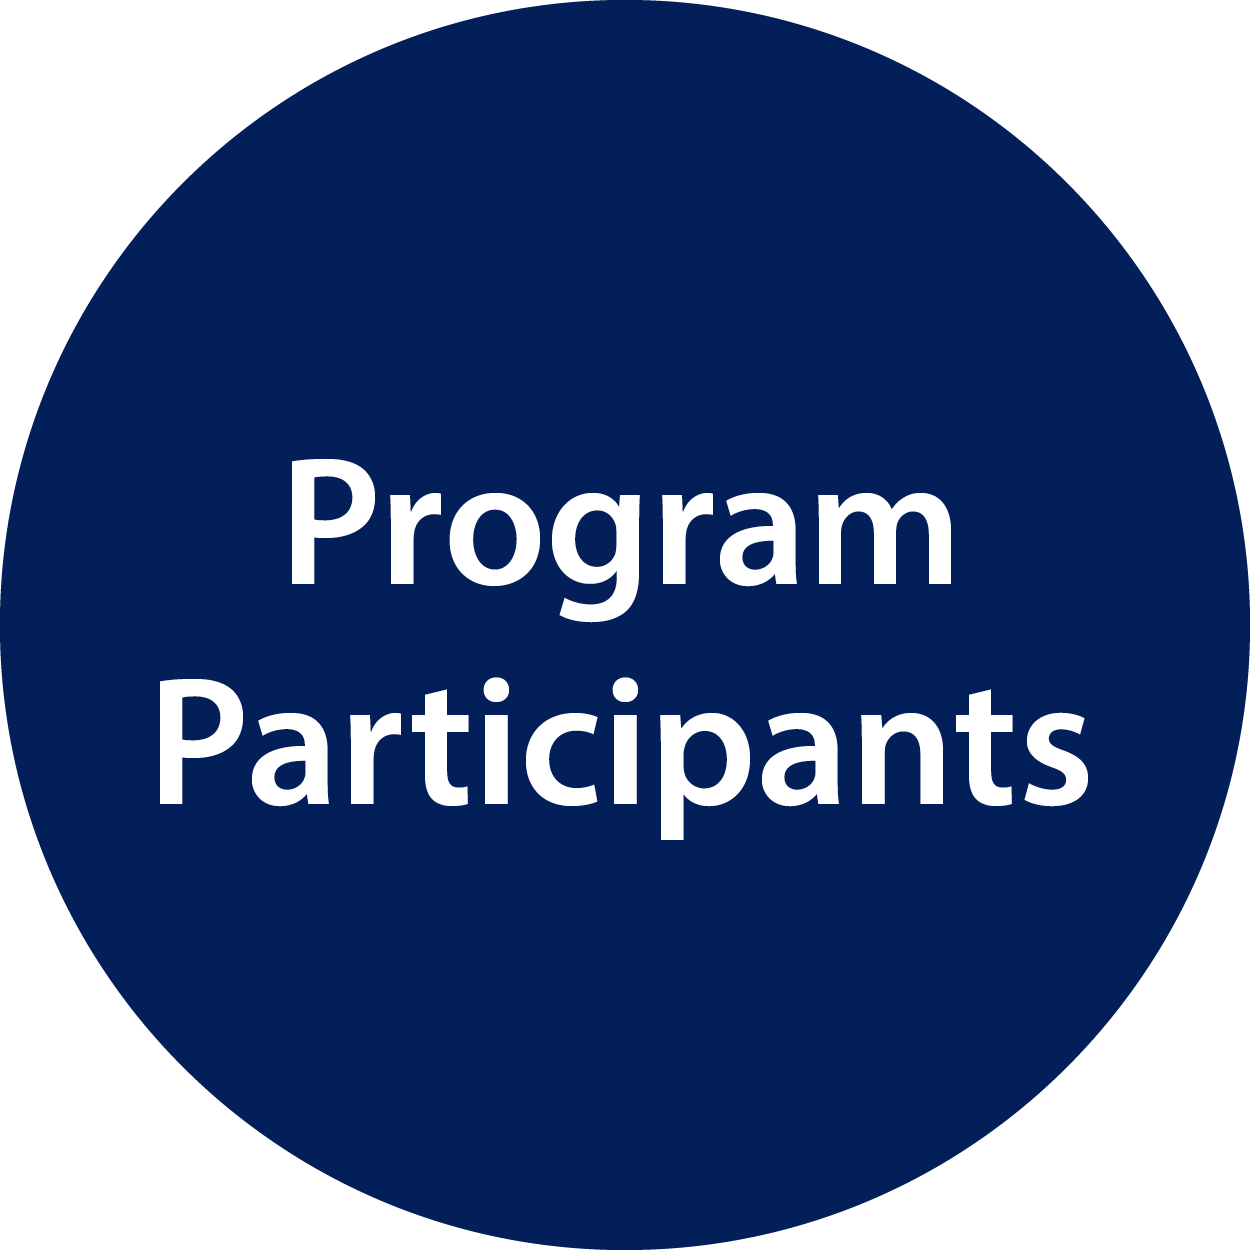 Program participants